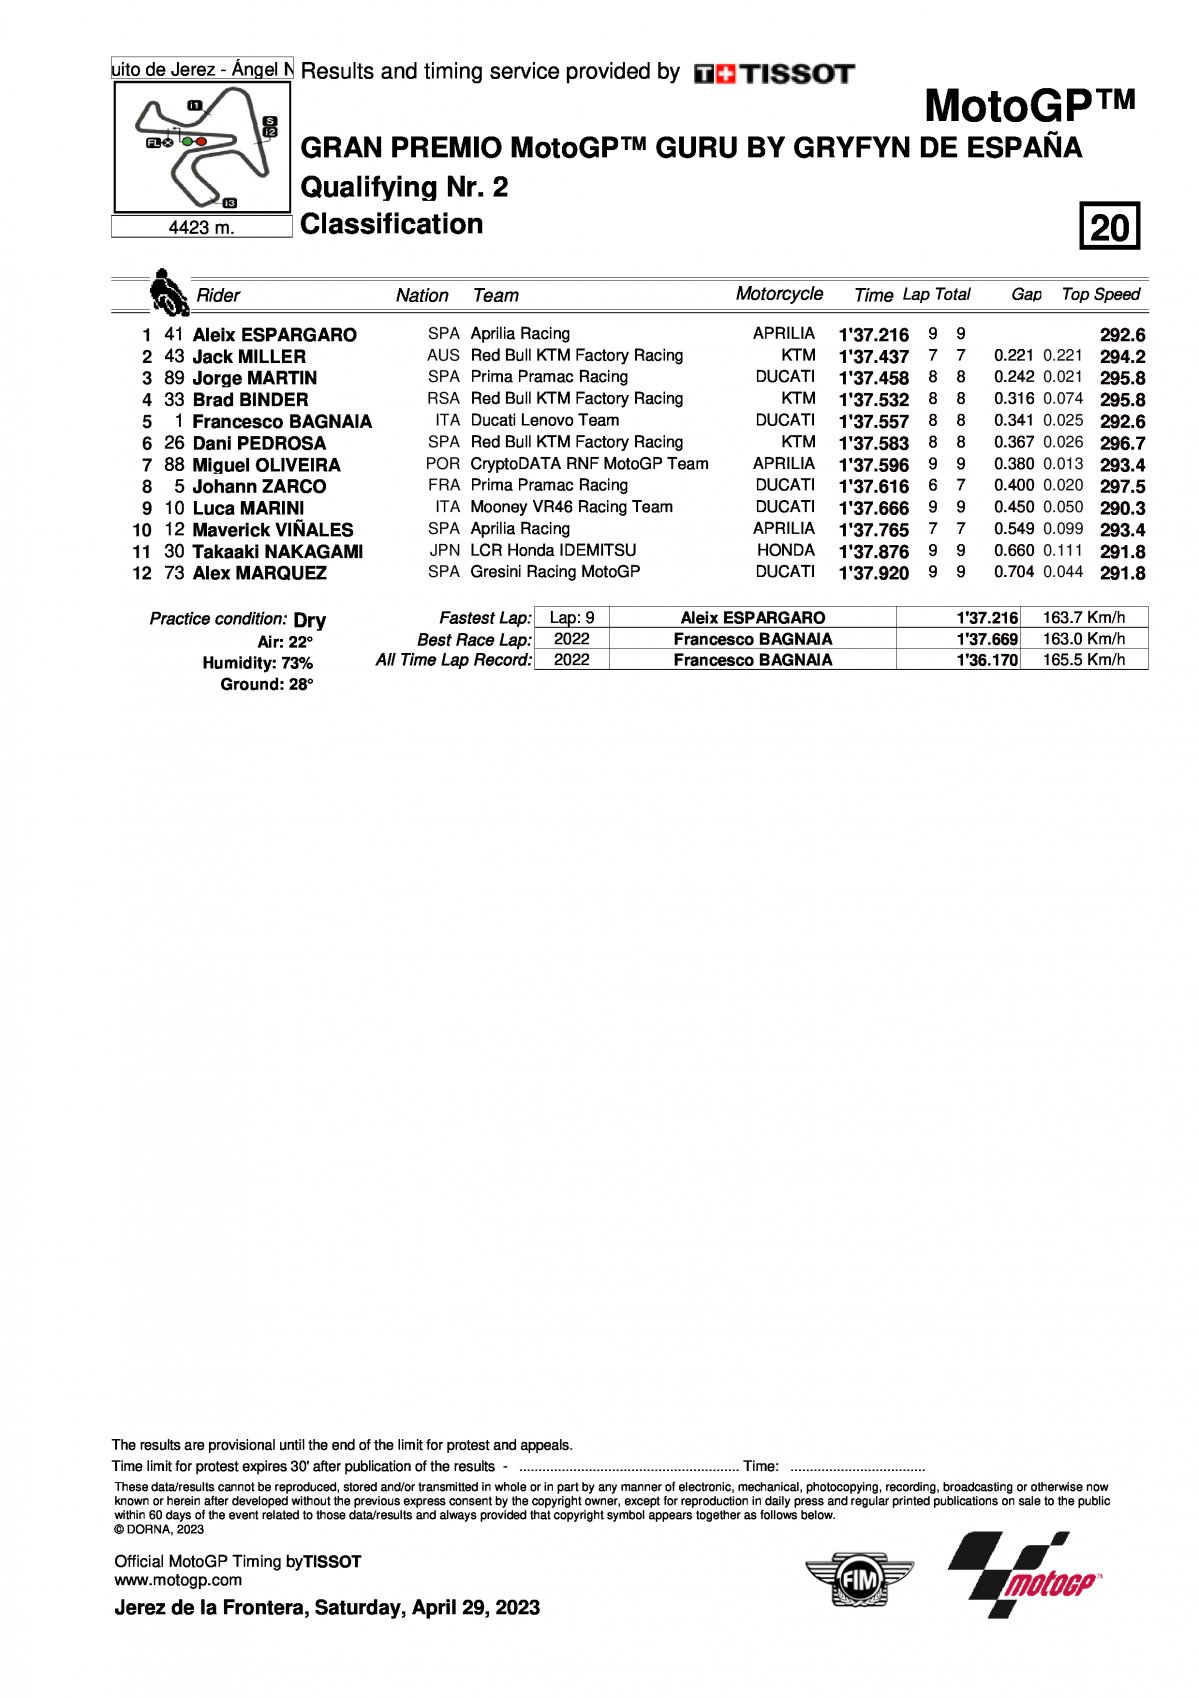 Результаты квалификации Q2 SpanishGP MotoGP (29/04/2023)